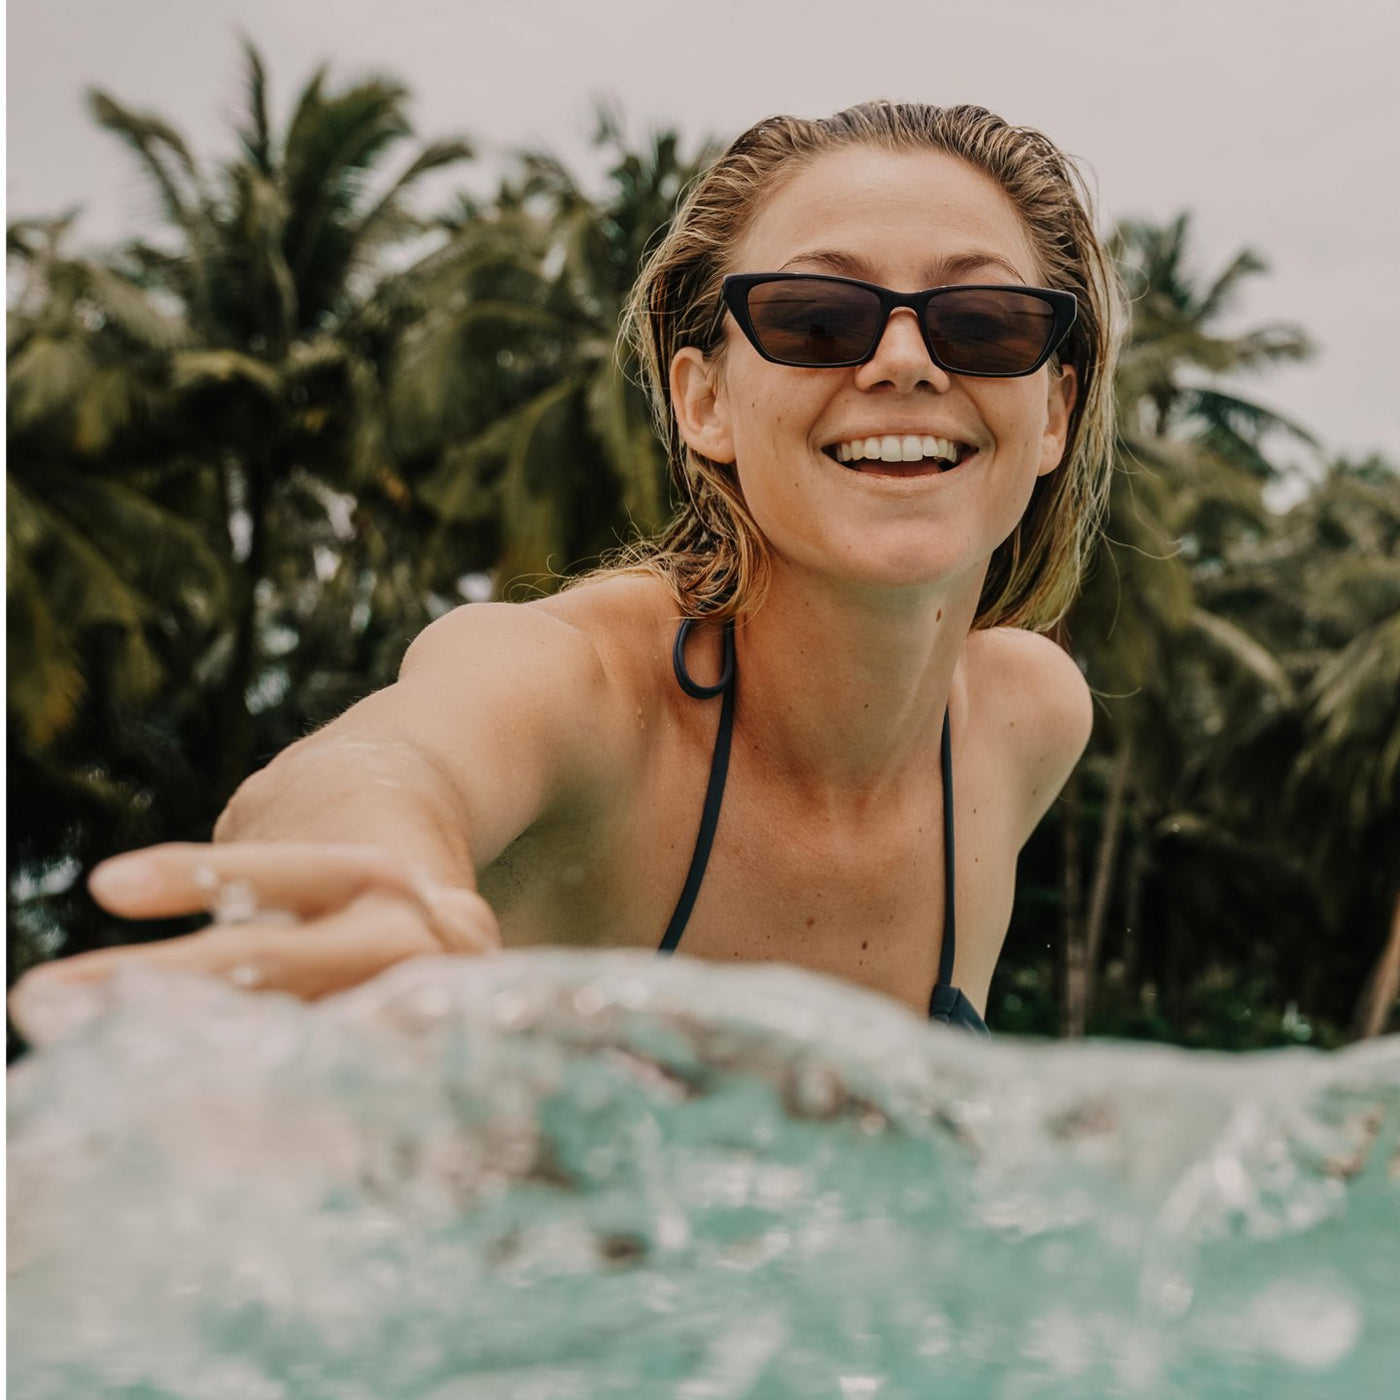 Imogen Caldwell playfully splashing in the ocean wearing OTIS Eyewear sunglasses